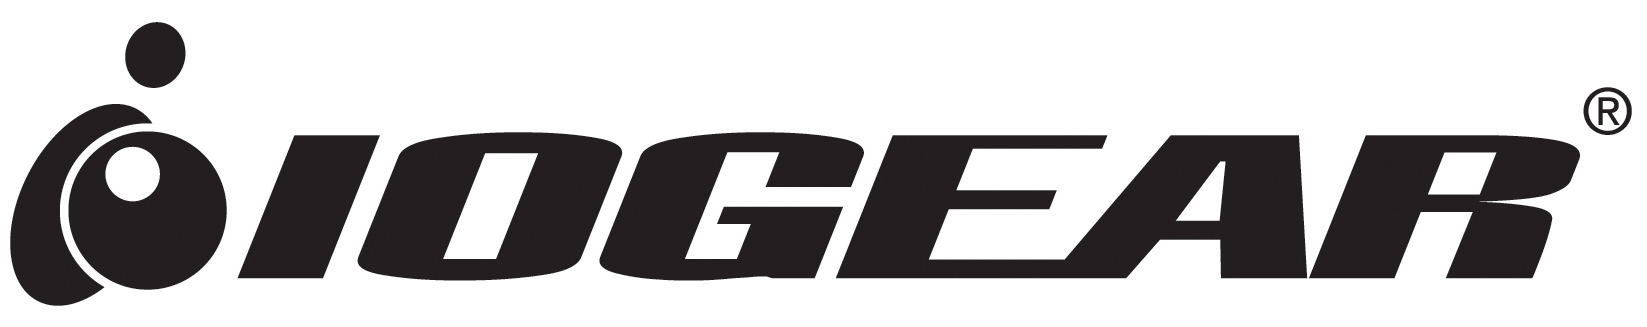 IOGEAR Logo photo - 1